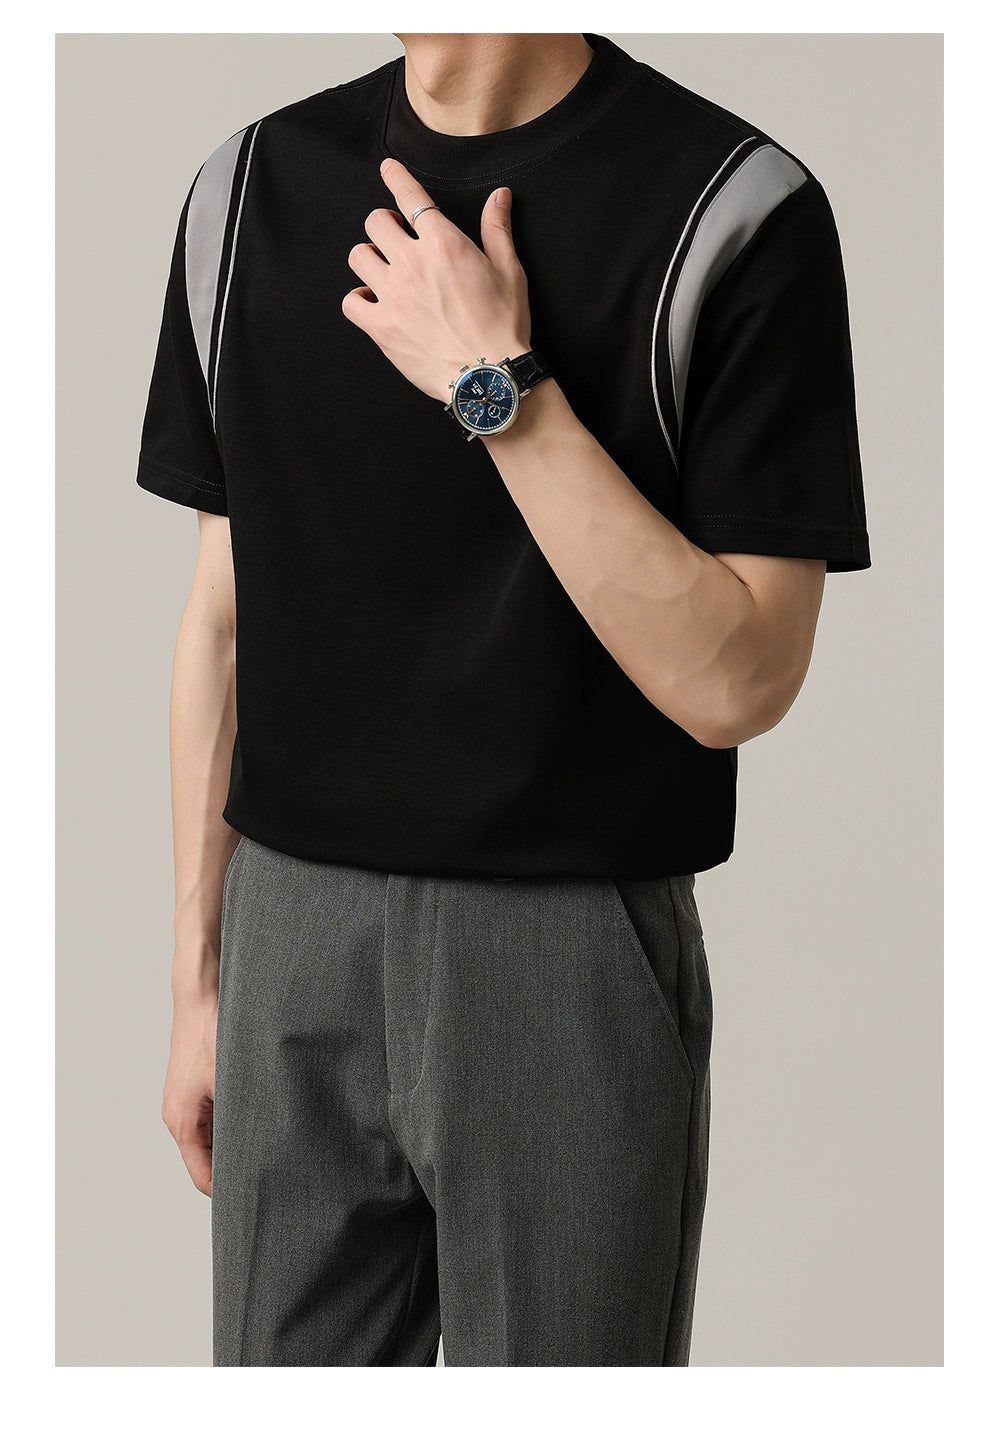 Zhou Contrast Splice Line T-Shirt-korean-fashion-T-Shirt-Zhou's Closet-OH Garments